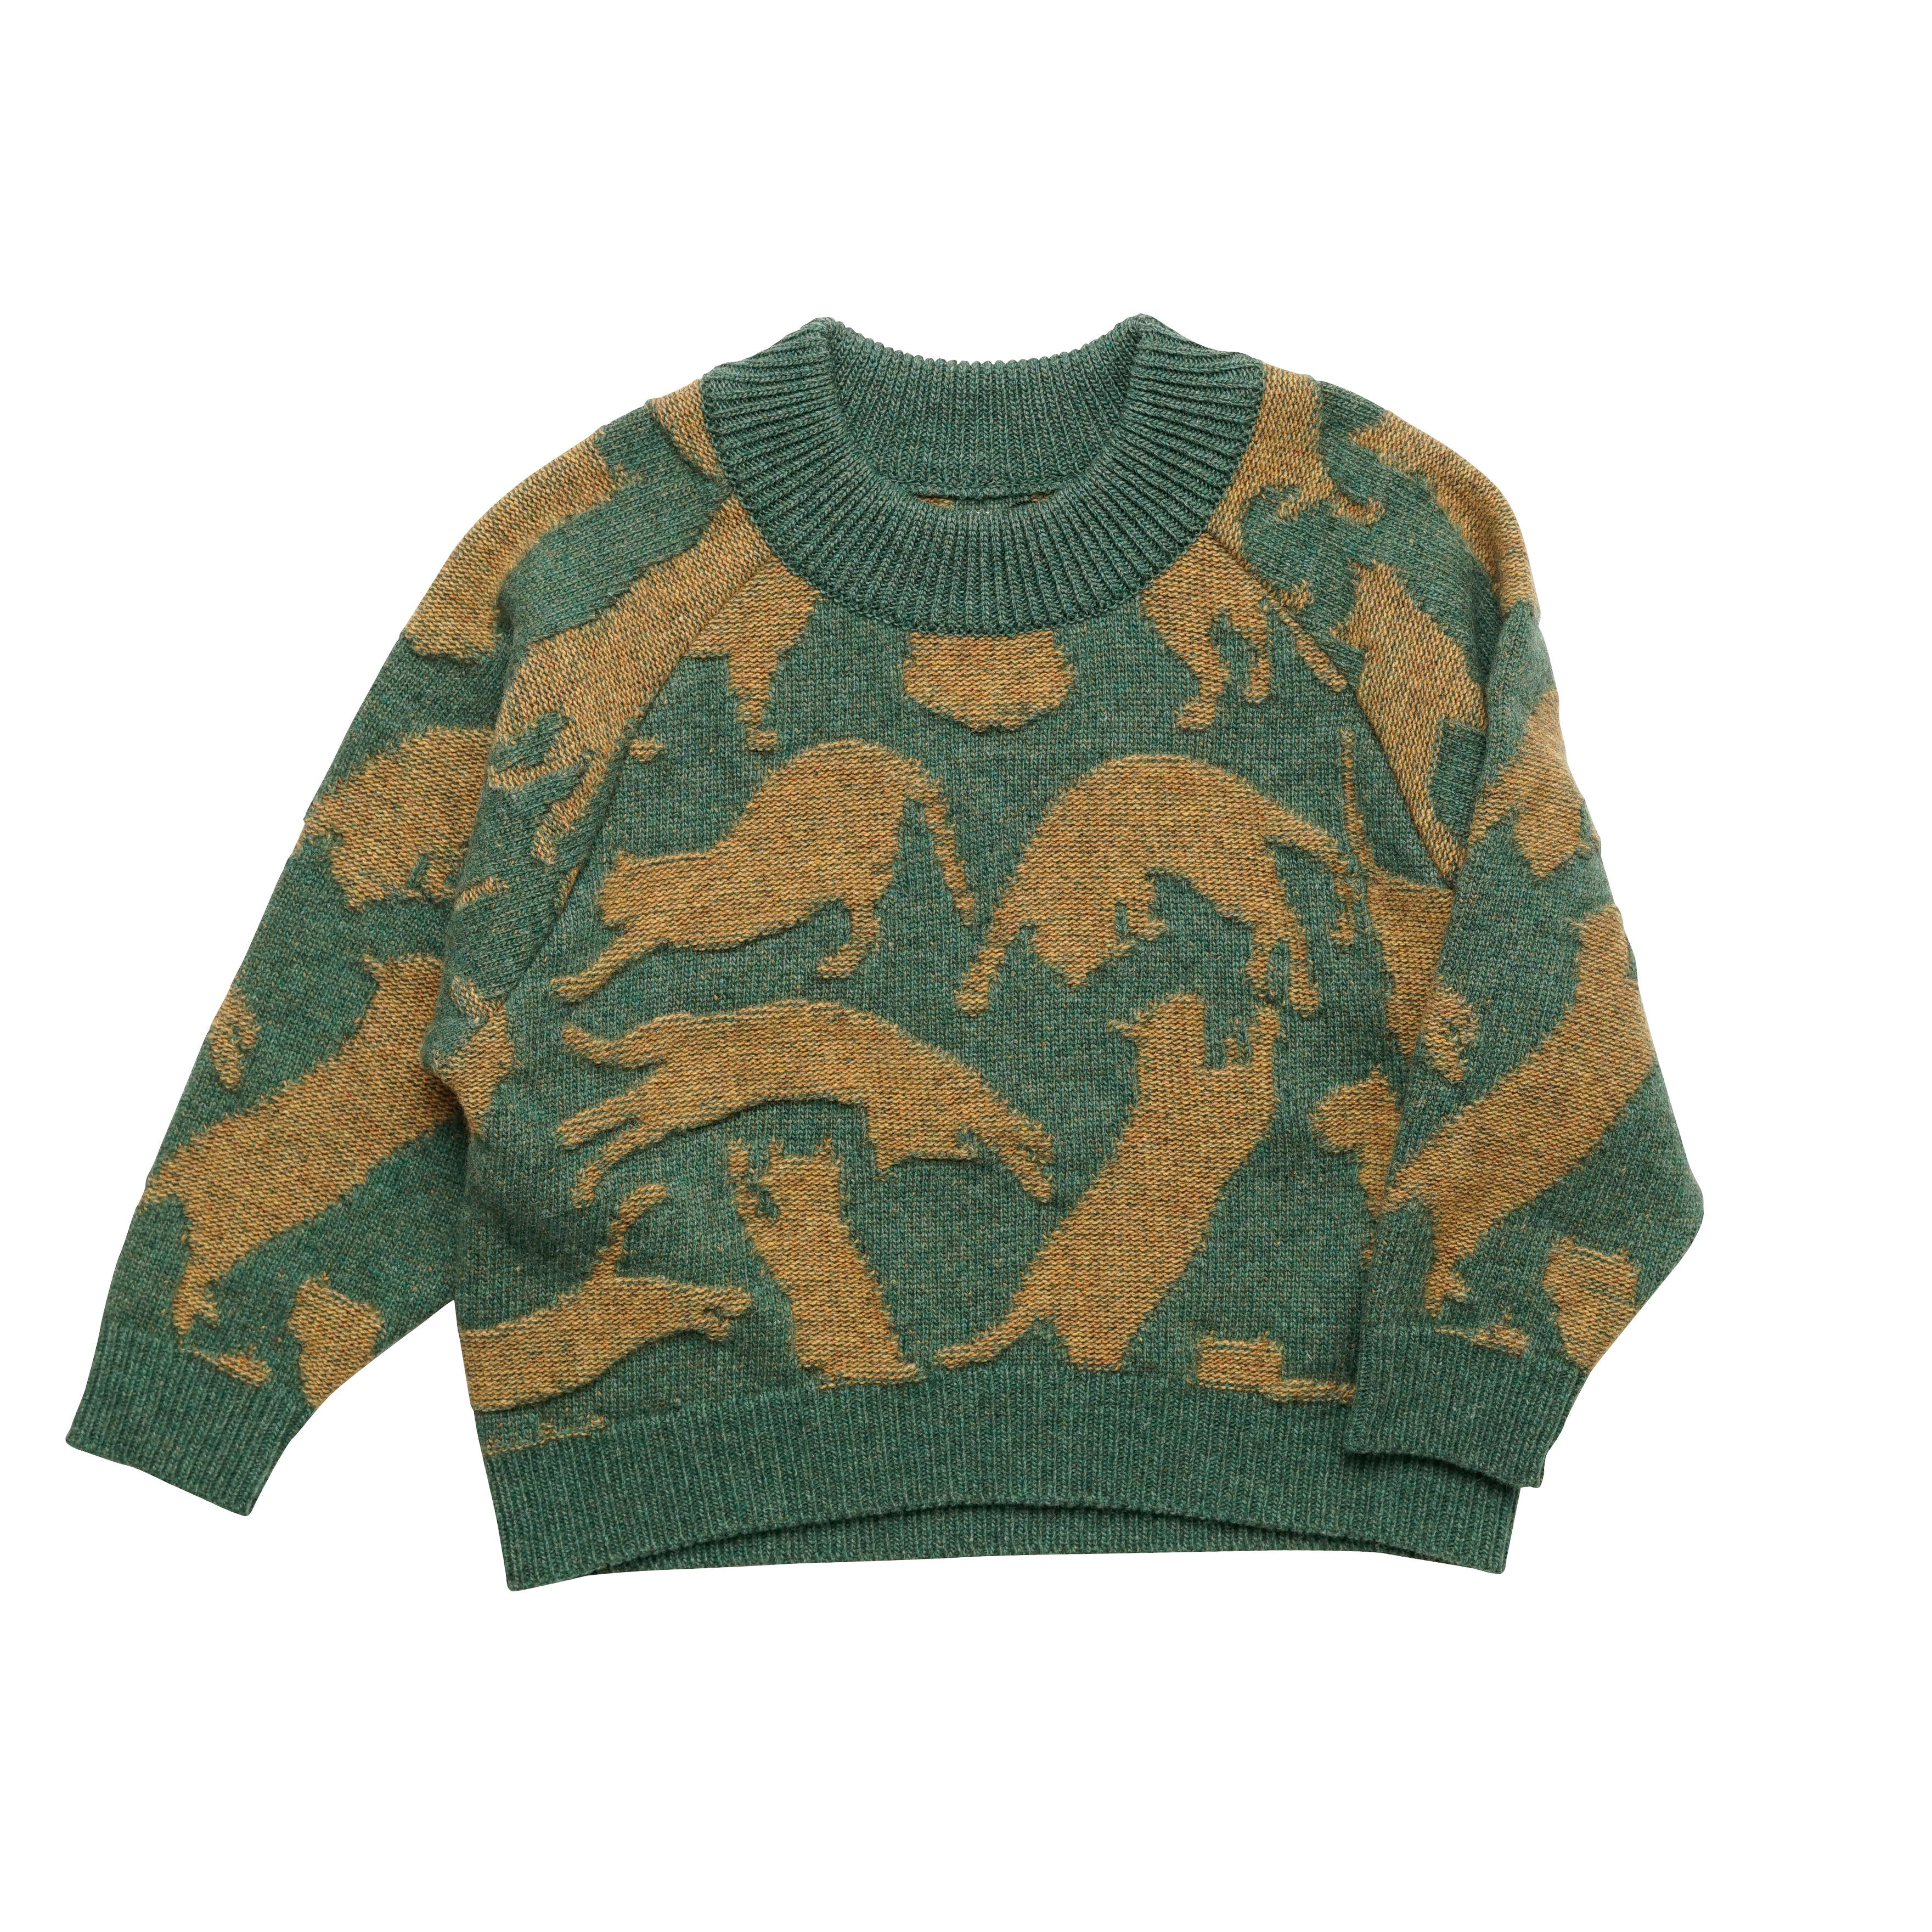 East End Highlanders Kid's Cat Knit Sweater Green/Mustard | BIEN BIEN www.bienbienshop.com